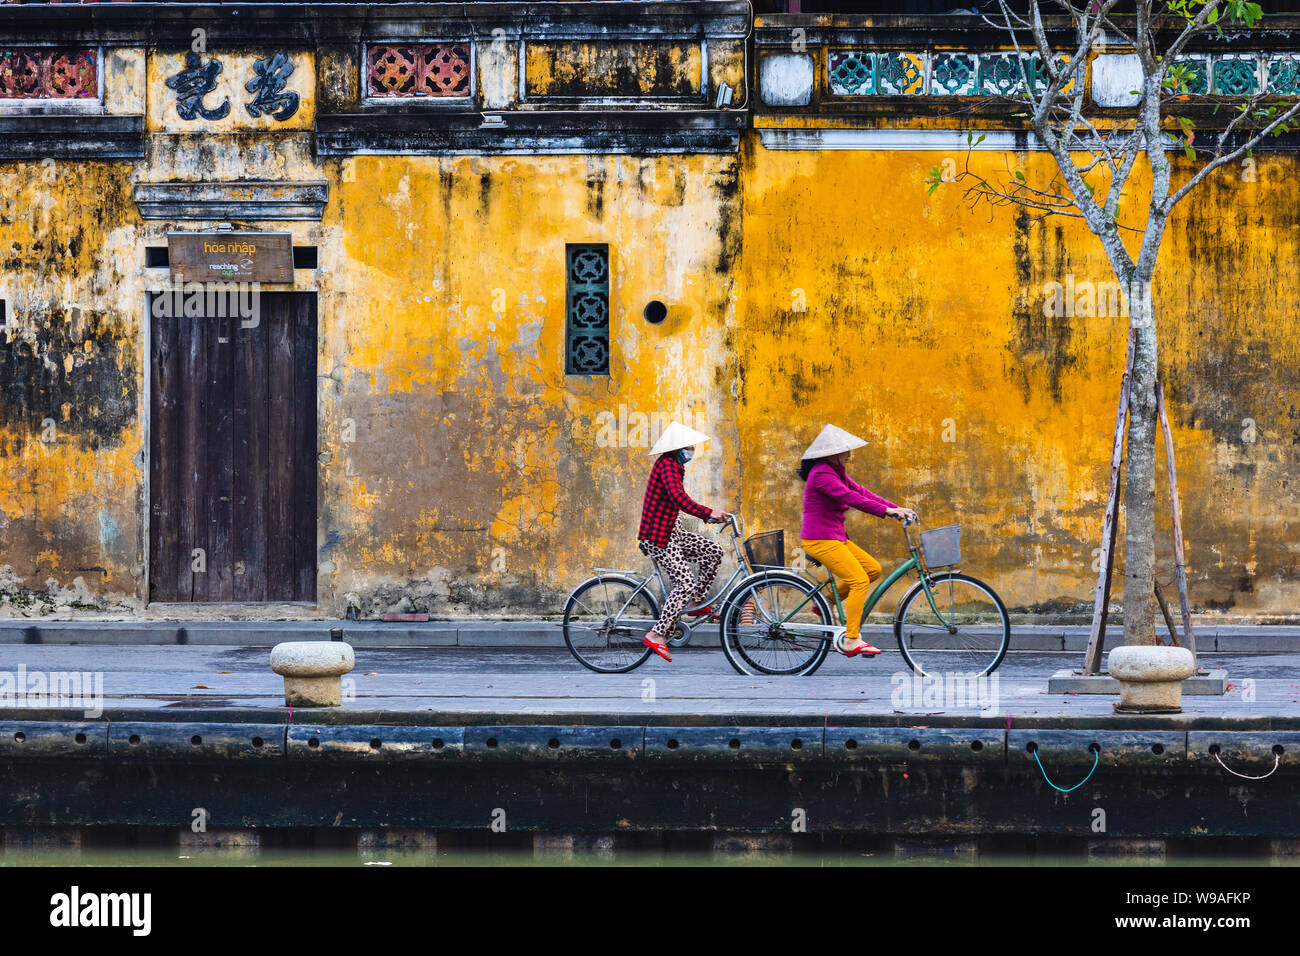 HOI AN, VIETNAM - 1 janvier 2018 : femme circuler à bicyclette dans Hoi An, Vietnam Banque D'Images